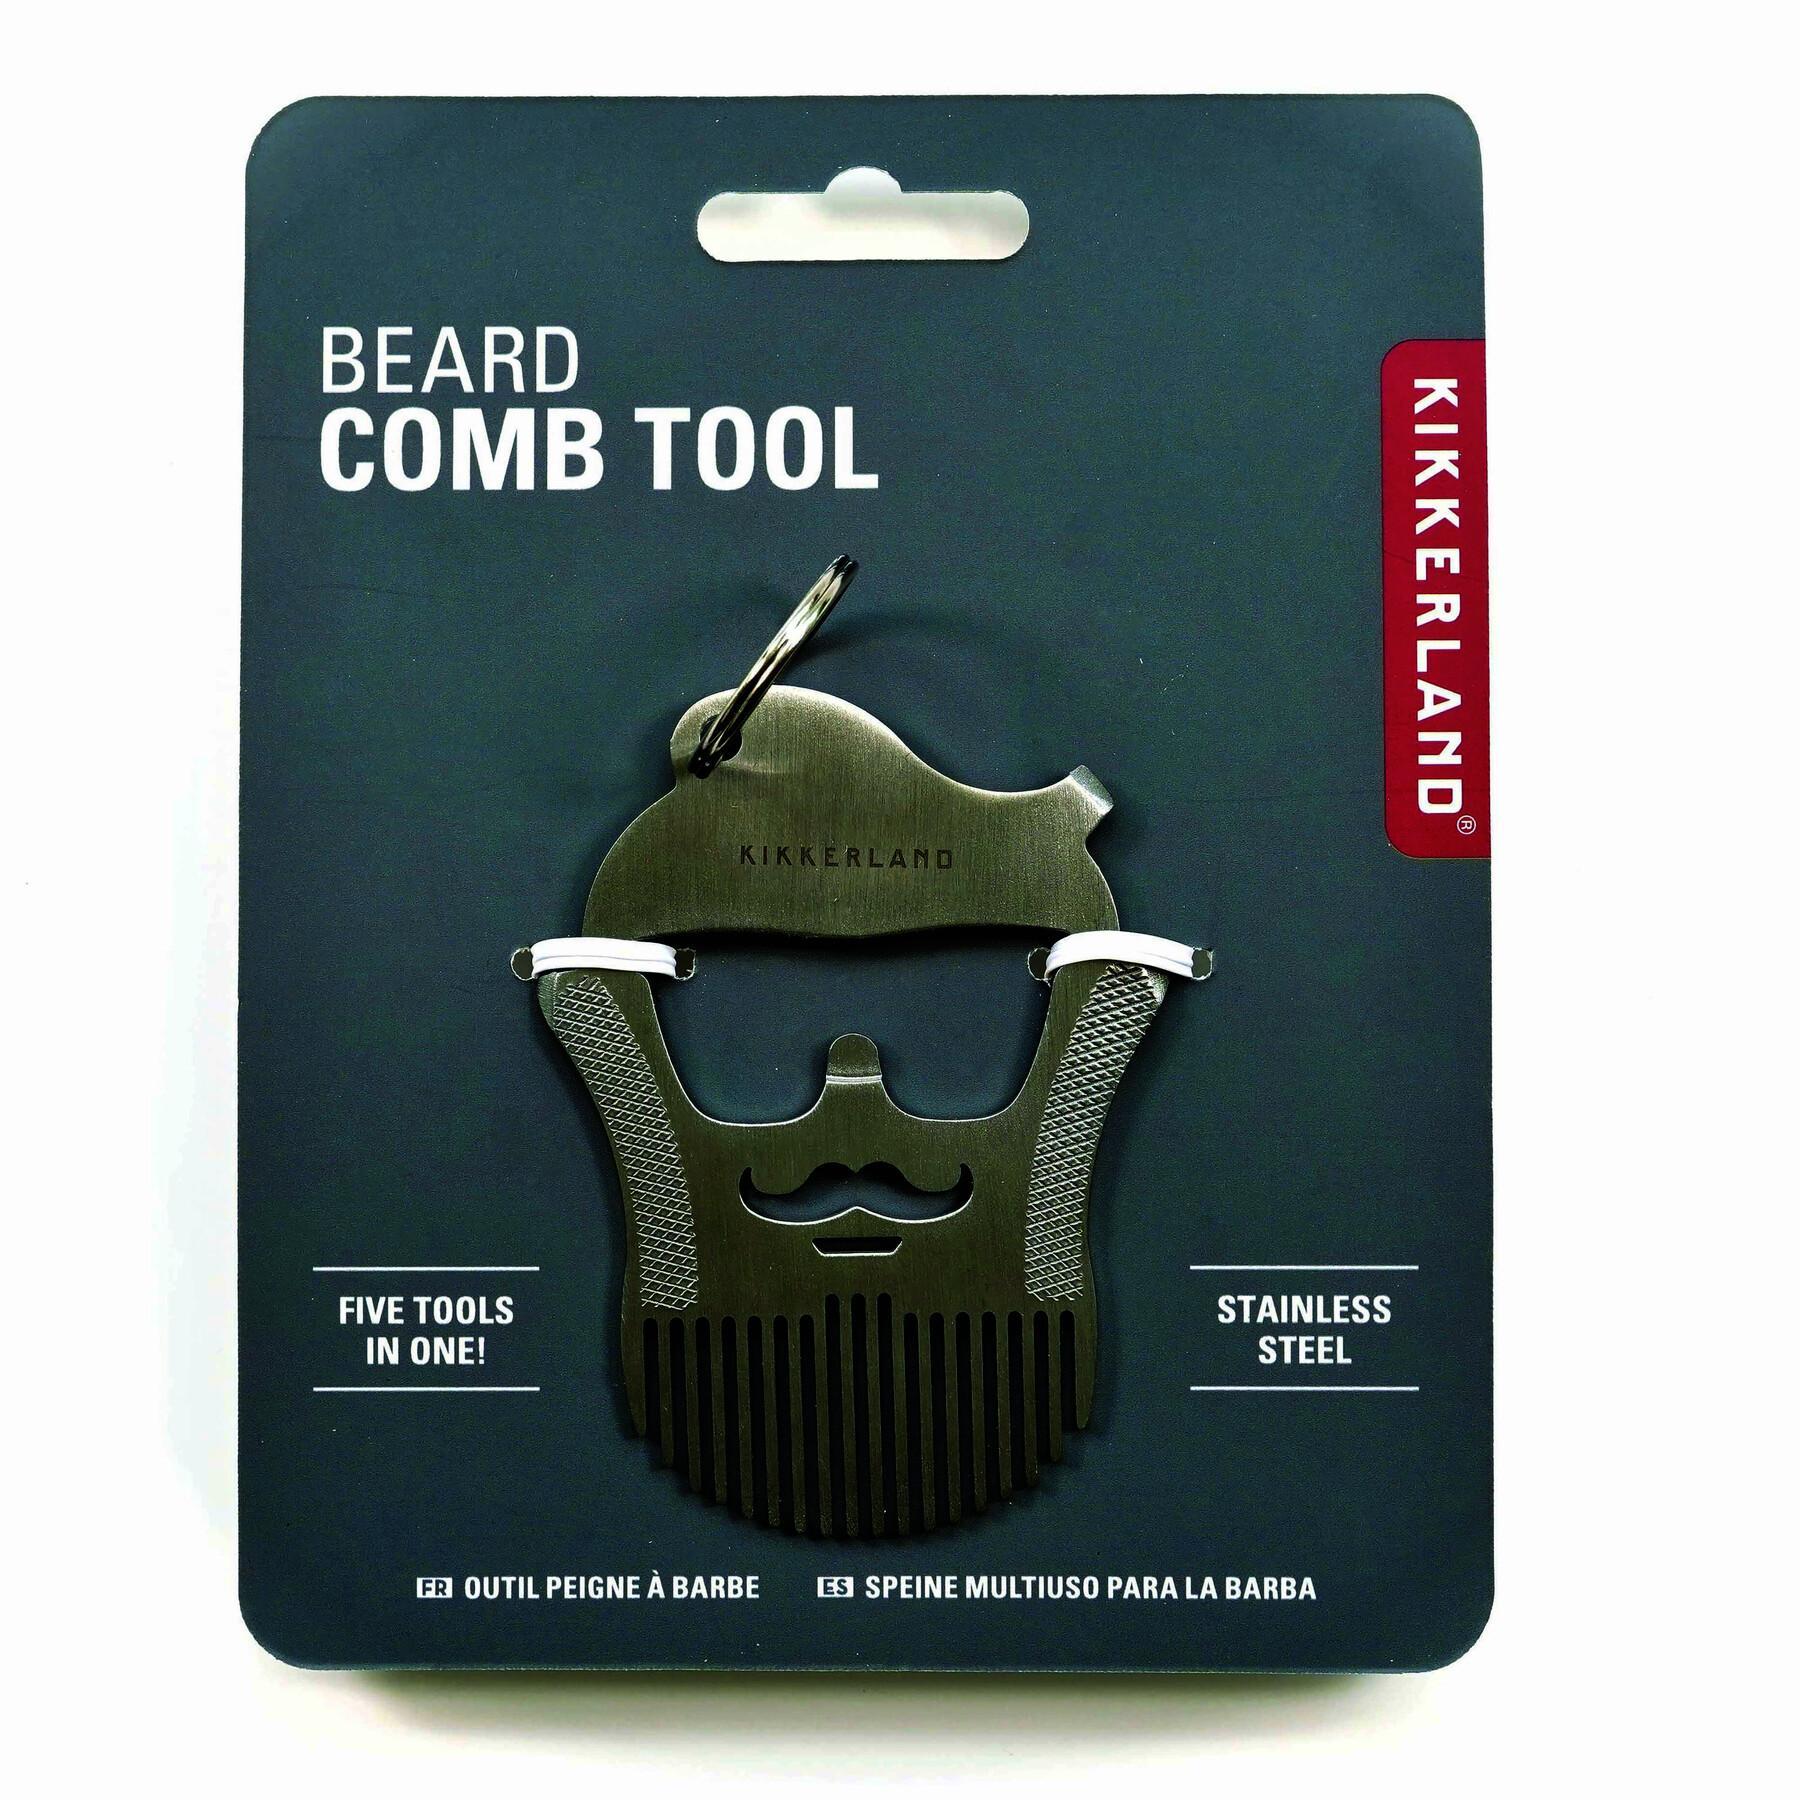 Beard Comb Tool - Kikkerland - Stainless Steel Multi 5 Tools-in-1 Keyring